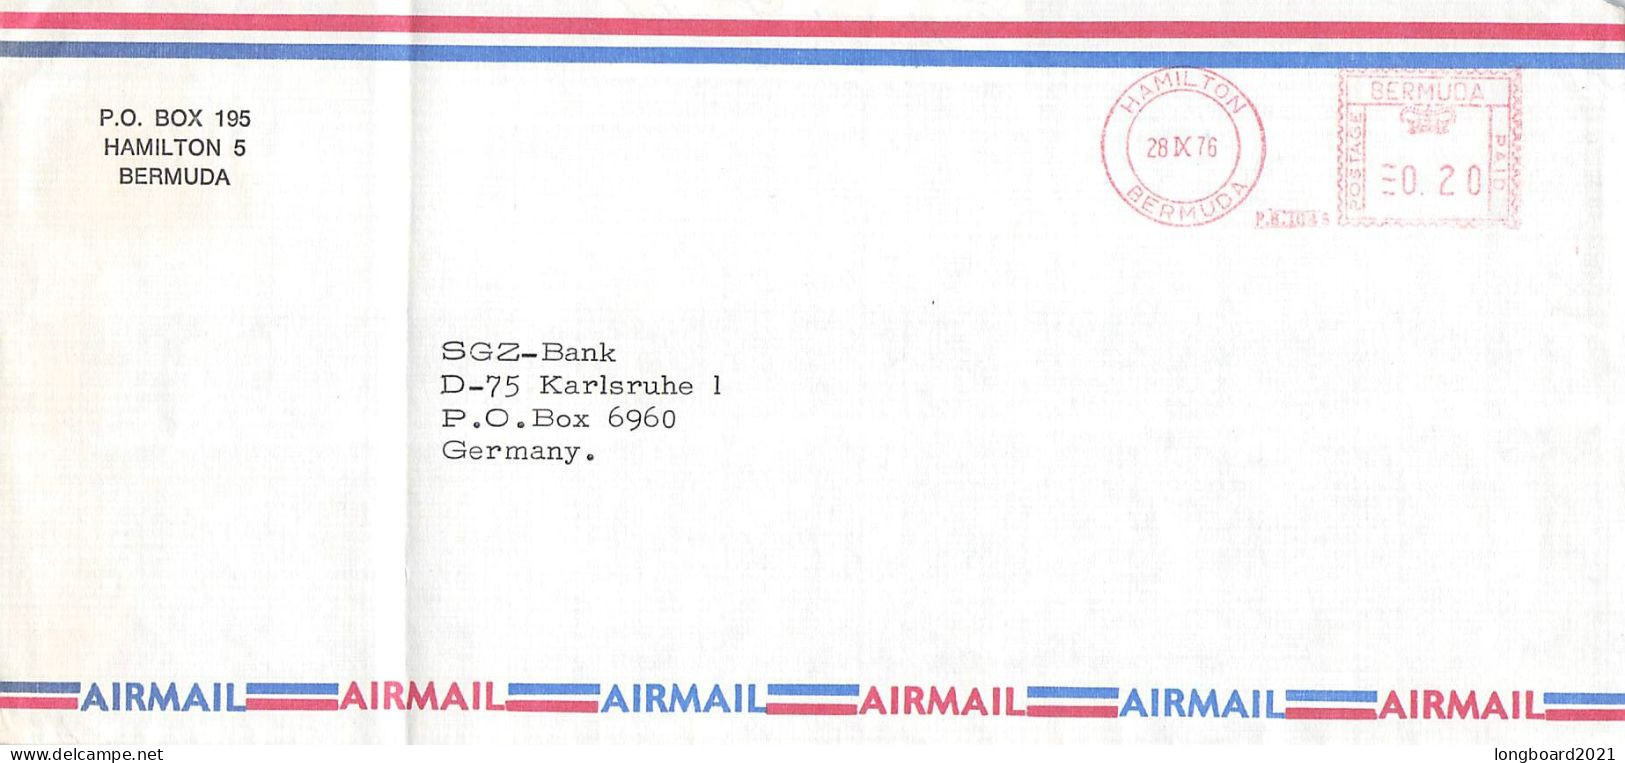 BERMUDA - AIRMAIL 1976 - KARLSRUHE/DE -METER- / 5167 - Bermudes